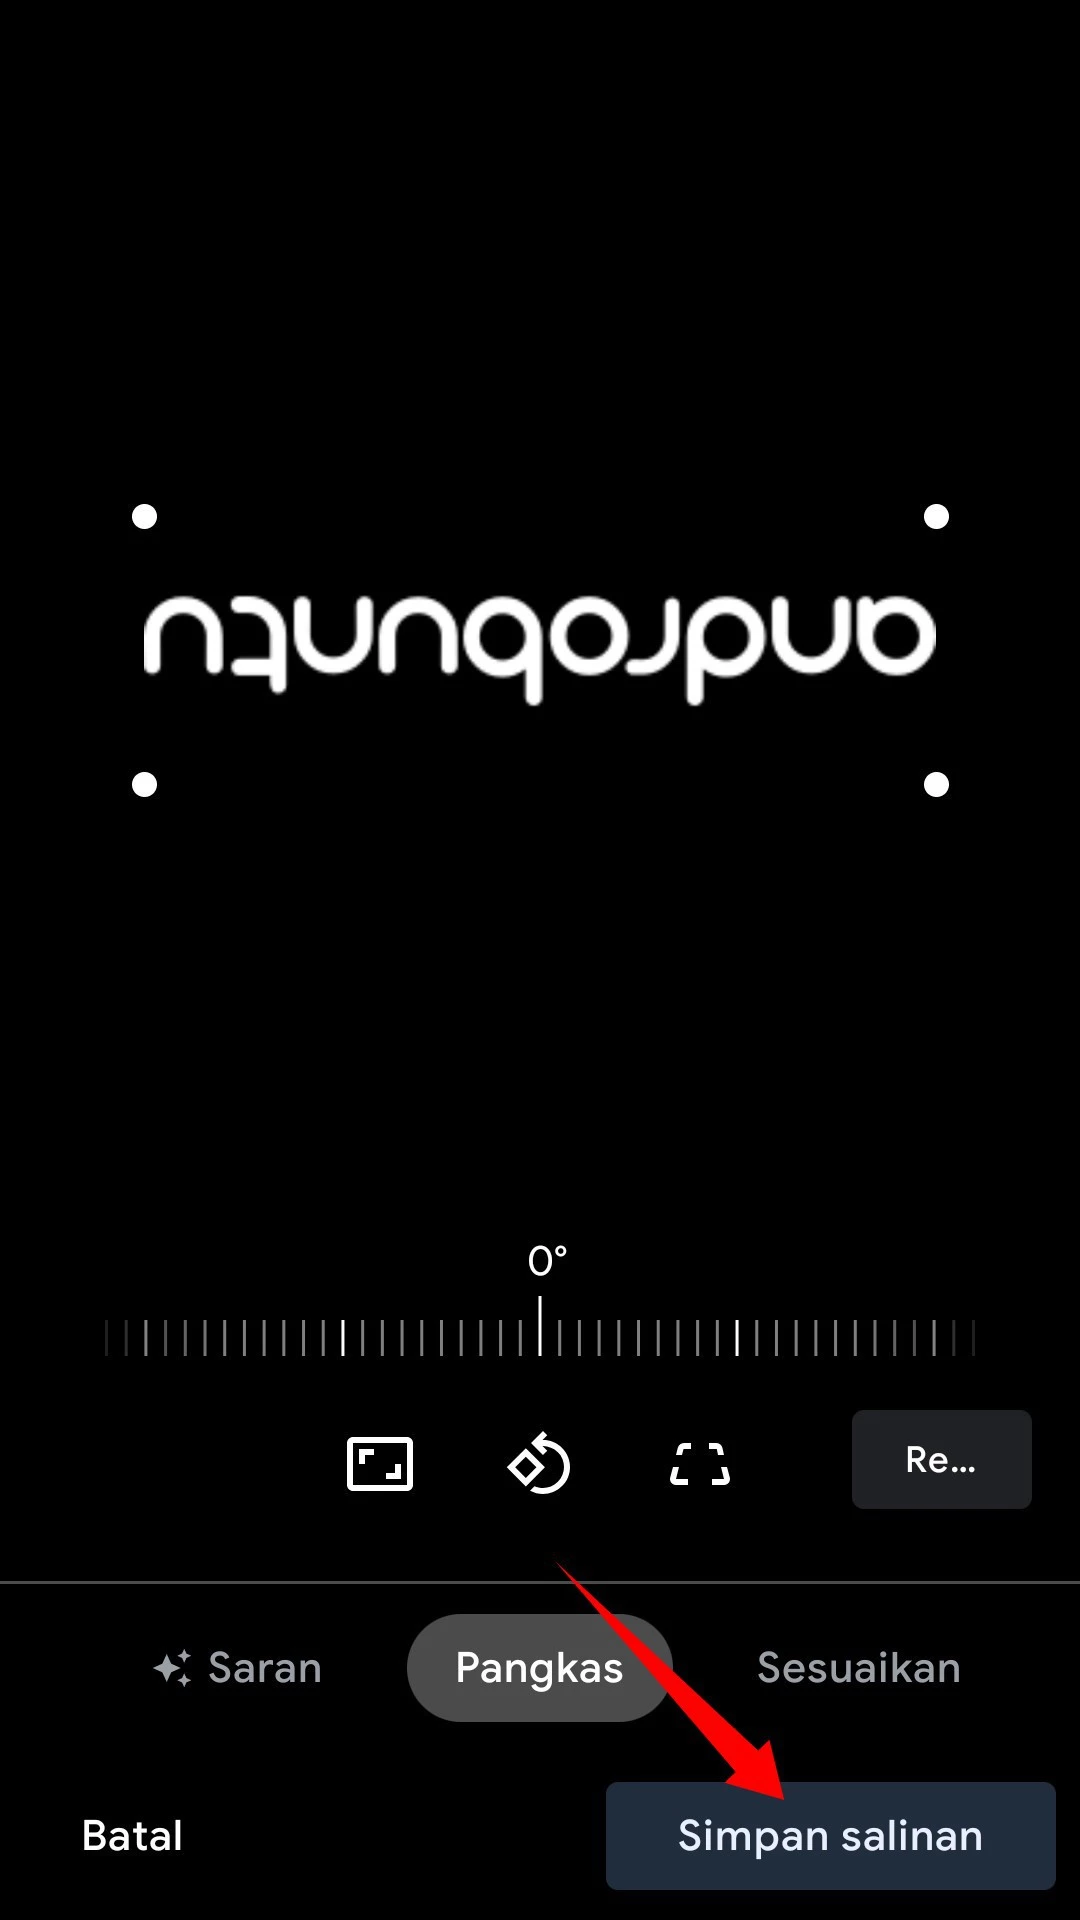 Cara Memutar Foto di Android by Androbuntu 7